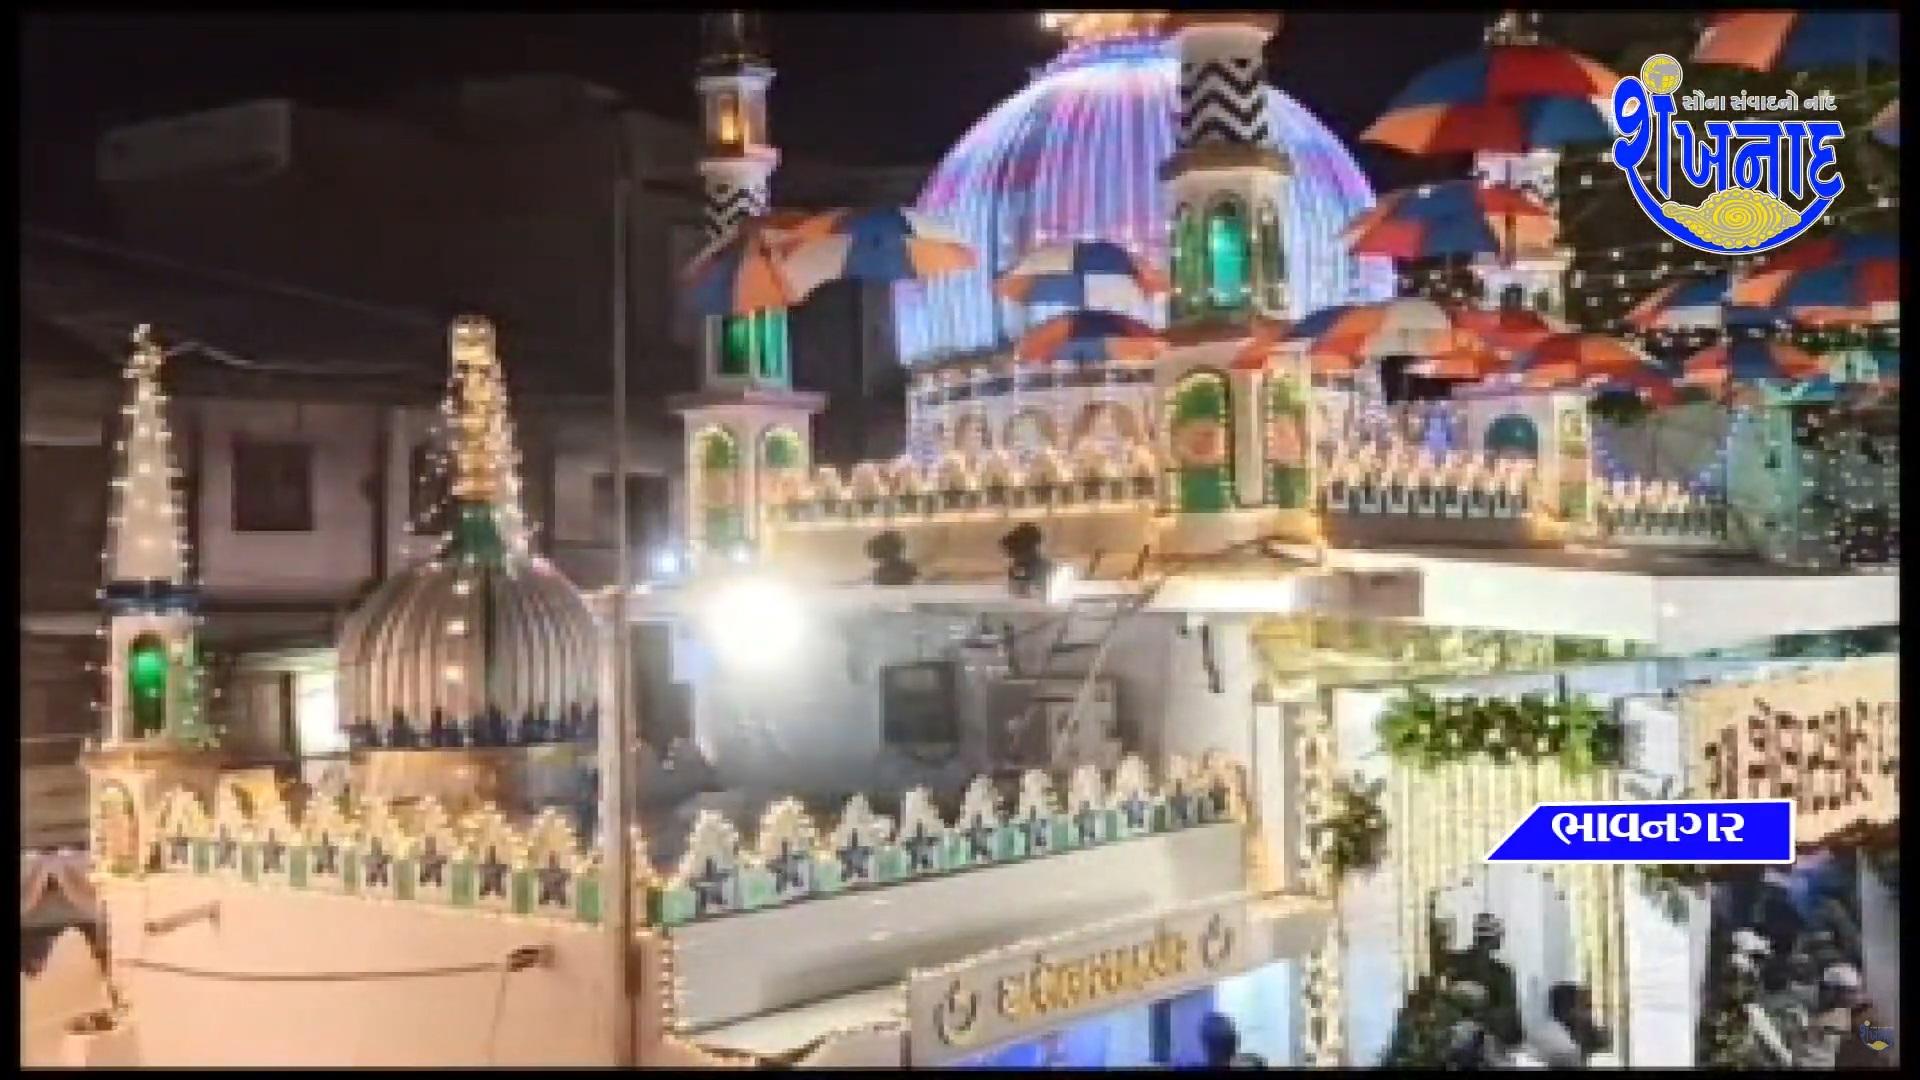 Ursh of Hazrat Roshan Zamir Shelarshah Pir Dada of Bhavnagar city was celebrated.